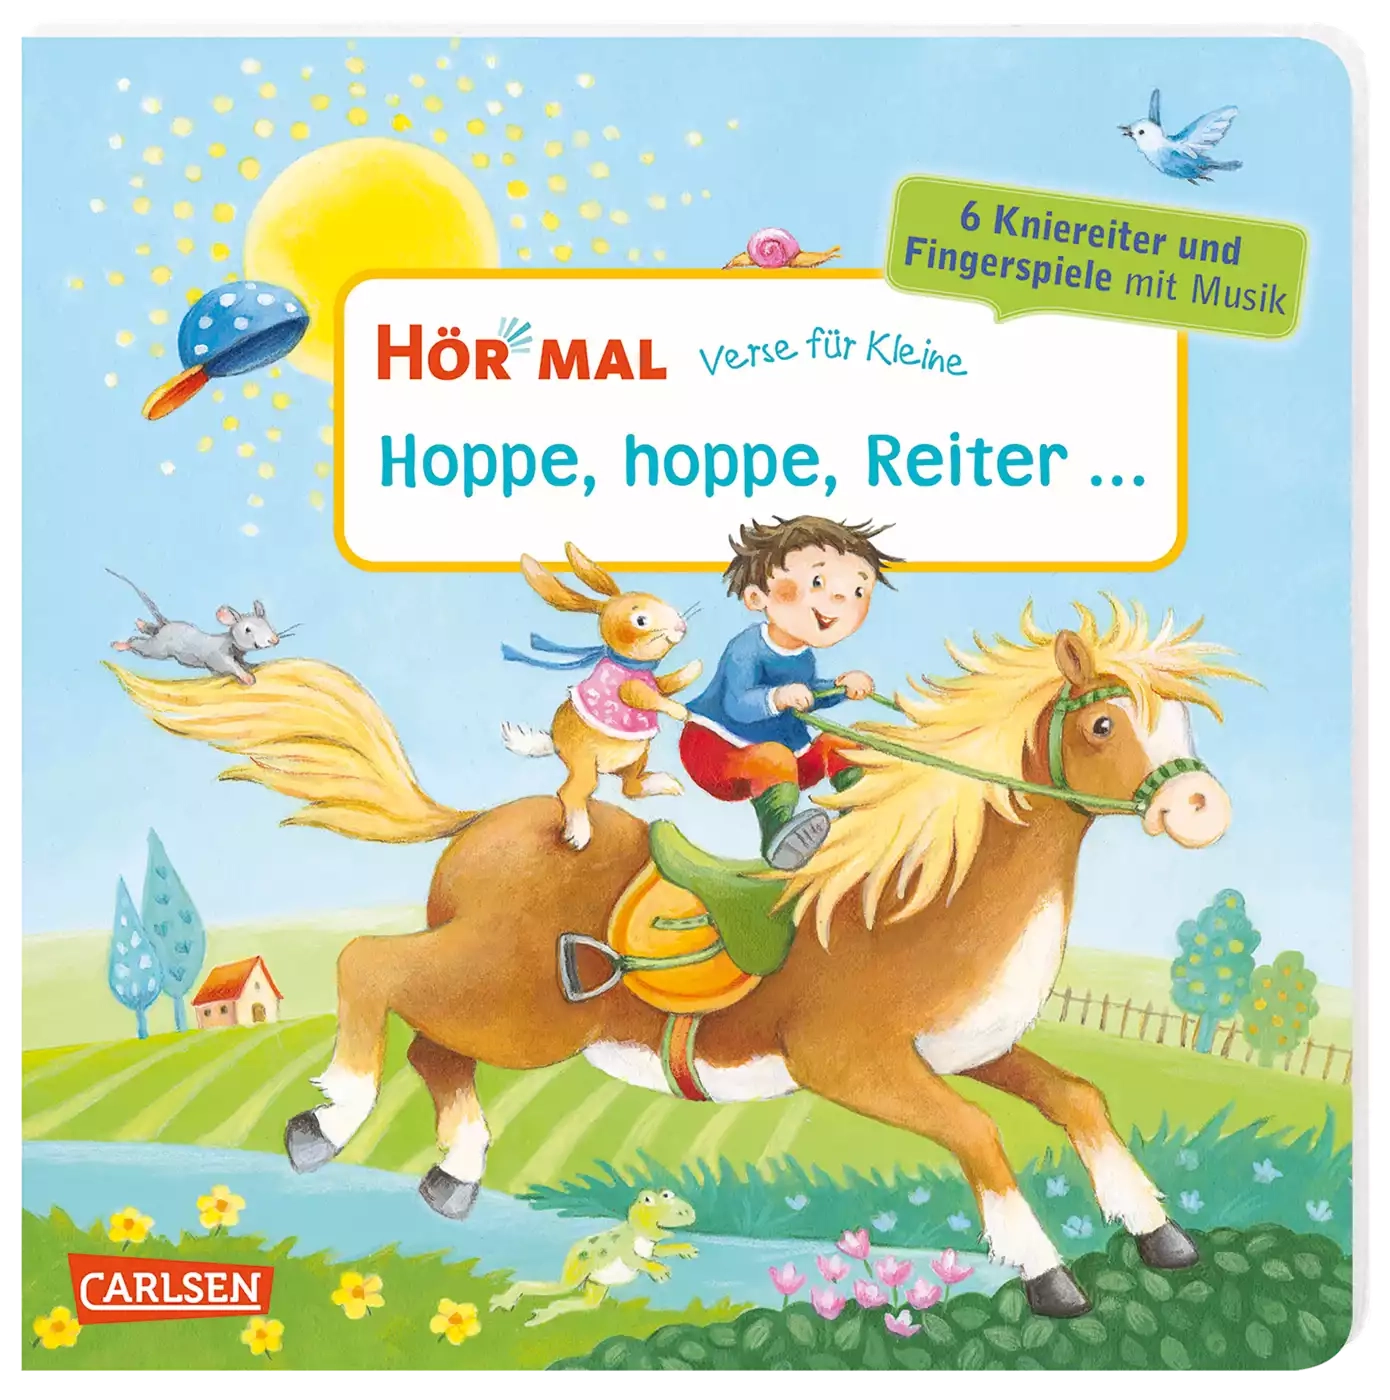 Hör mal: Verse für Kleine: Hoppe, hoppe, Reiter ... CARLSEN 2000579973109 1